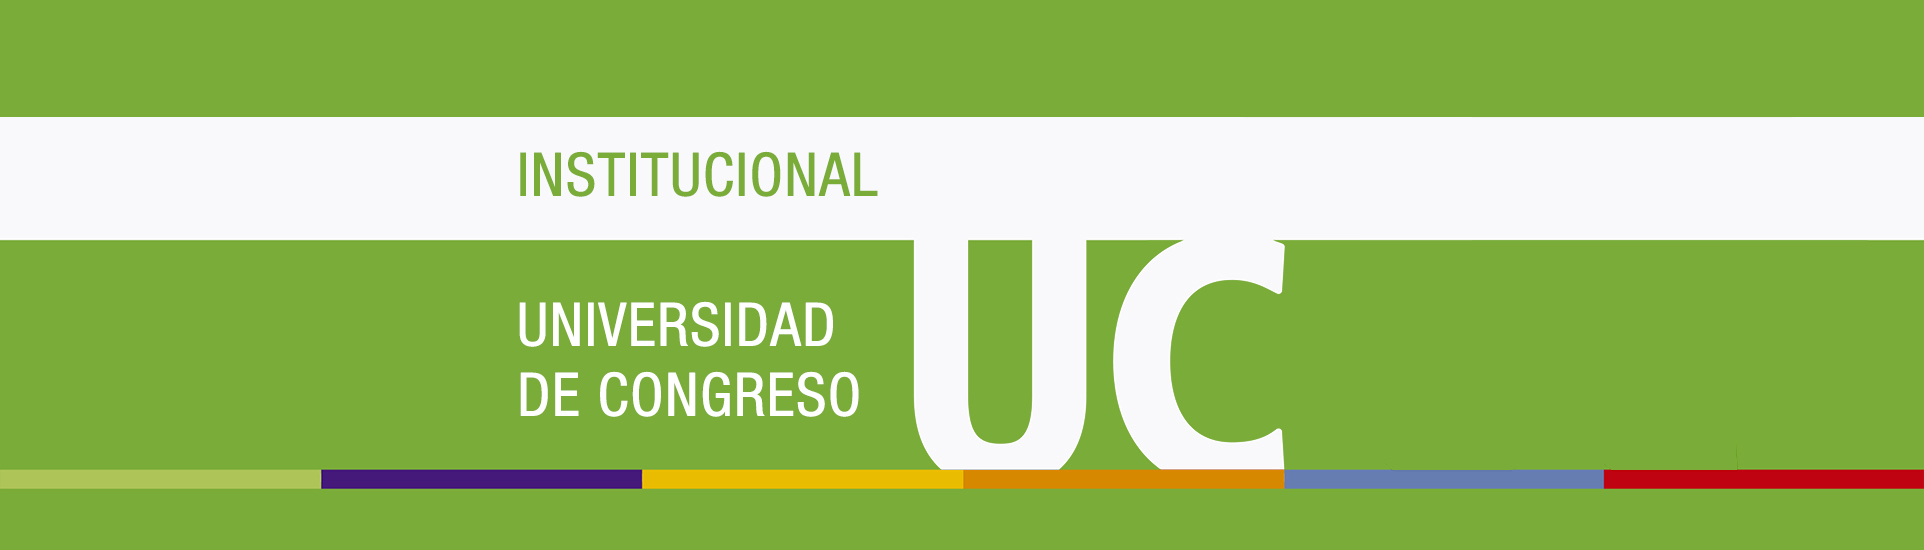 Institucional Nuestra Historia Universidad De Congreso Universidad De Congreso 7790